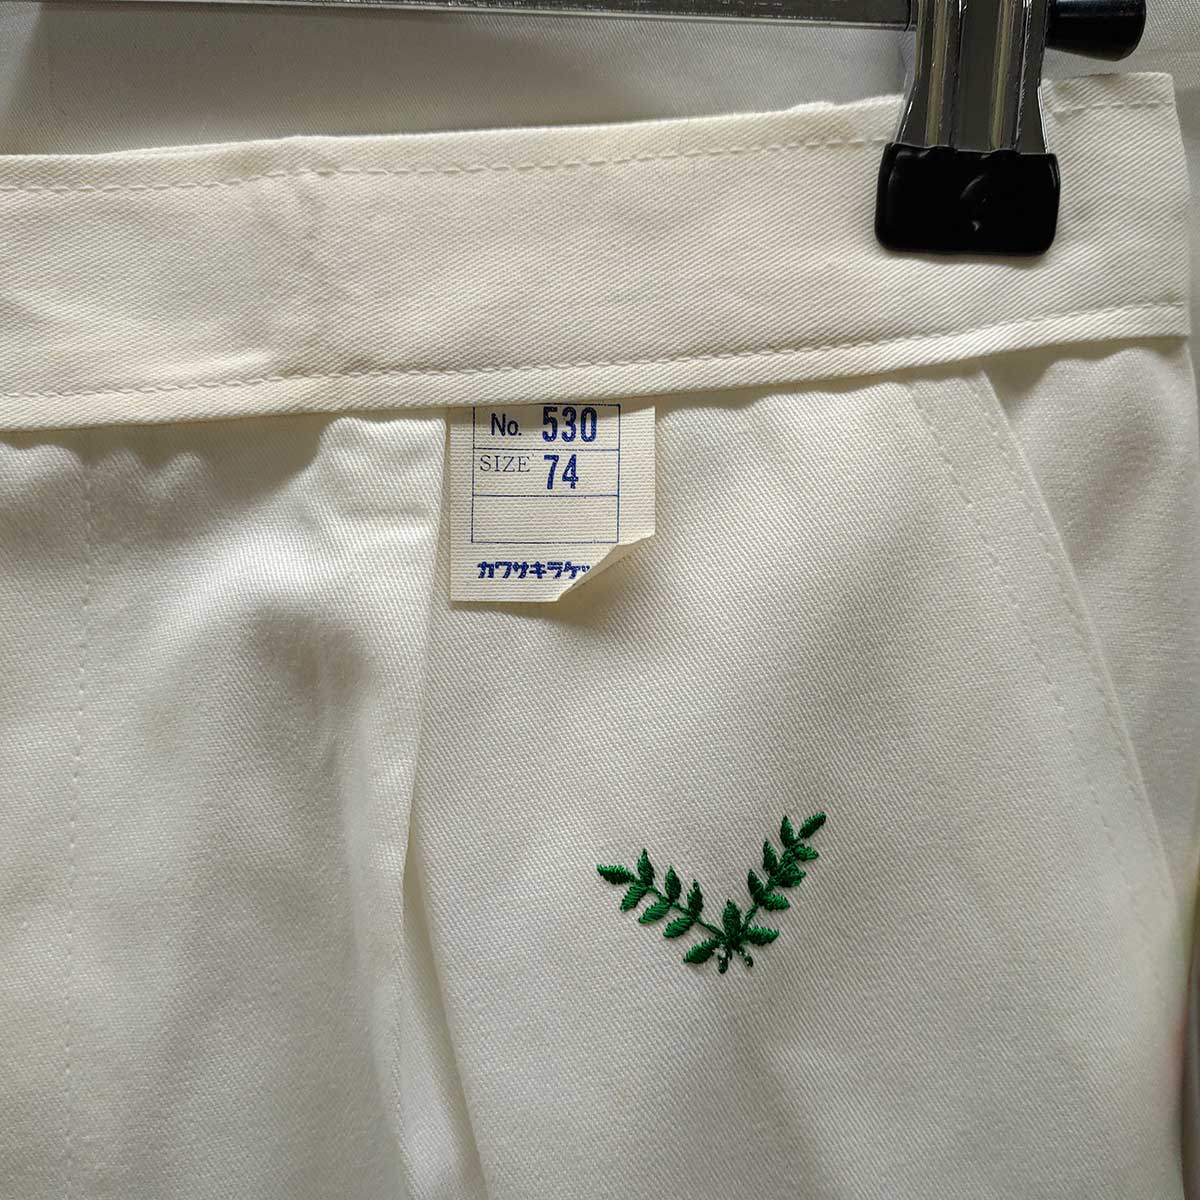 [ used ] Kawasaki racket lease WREATH tennis pants sport wear dead stock Vintage 